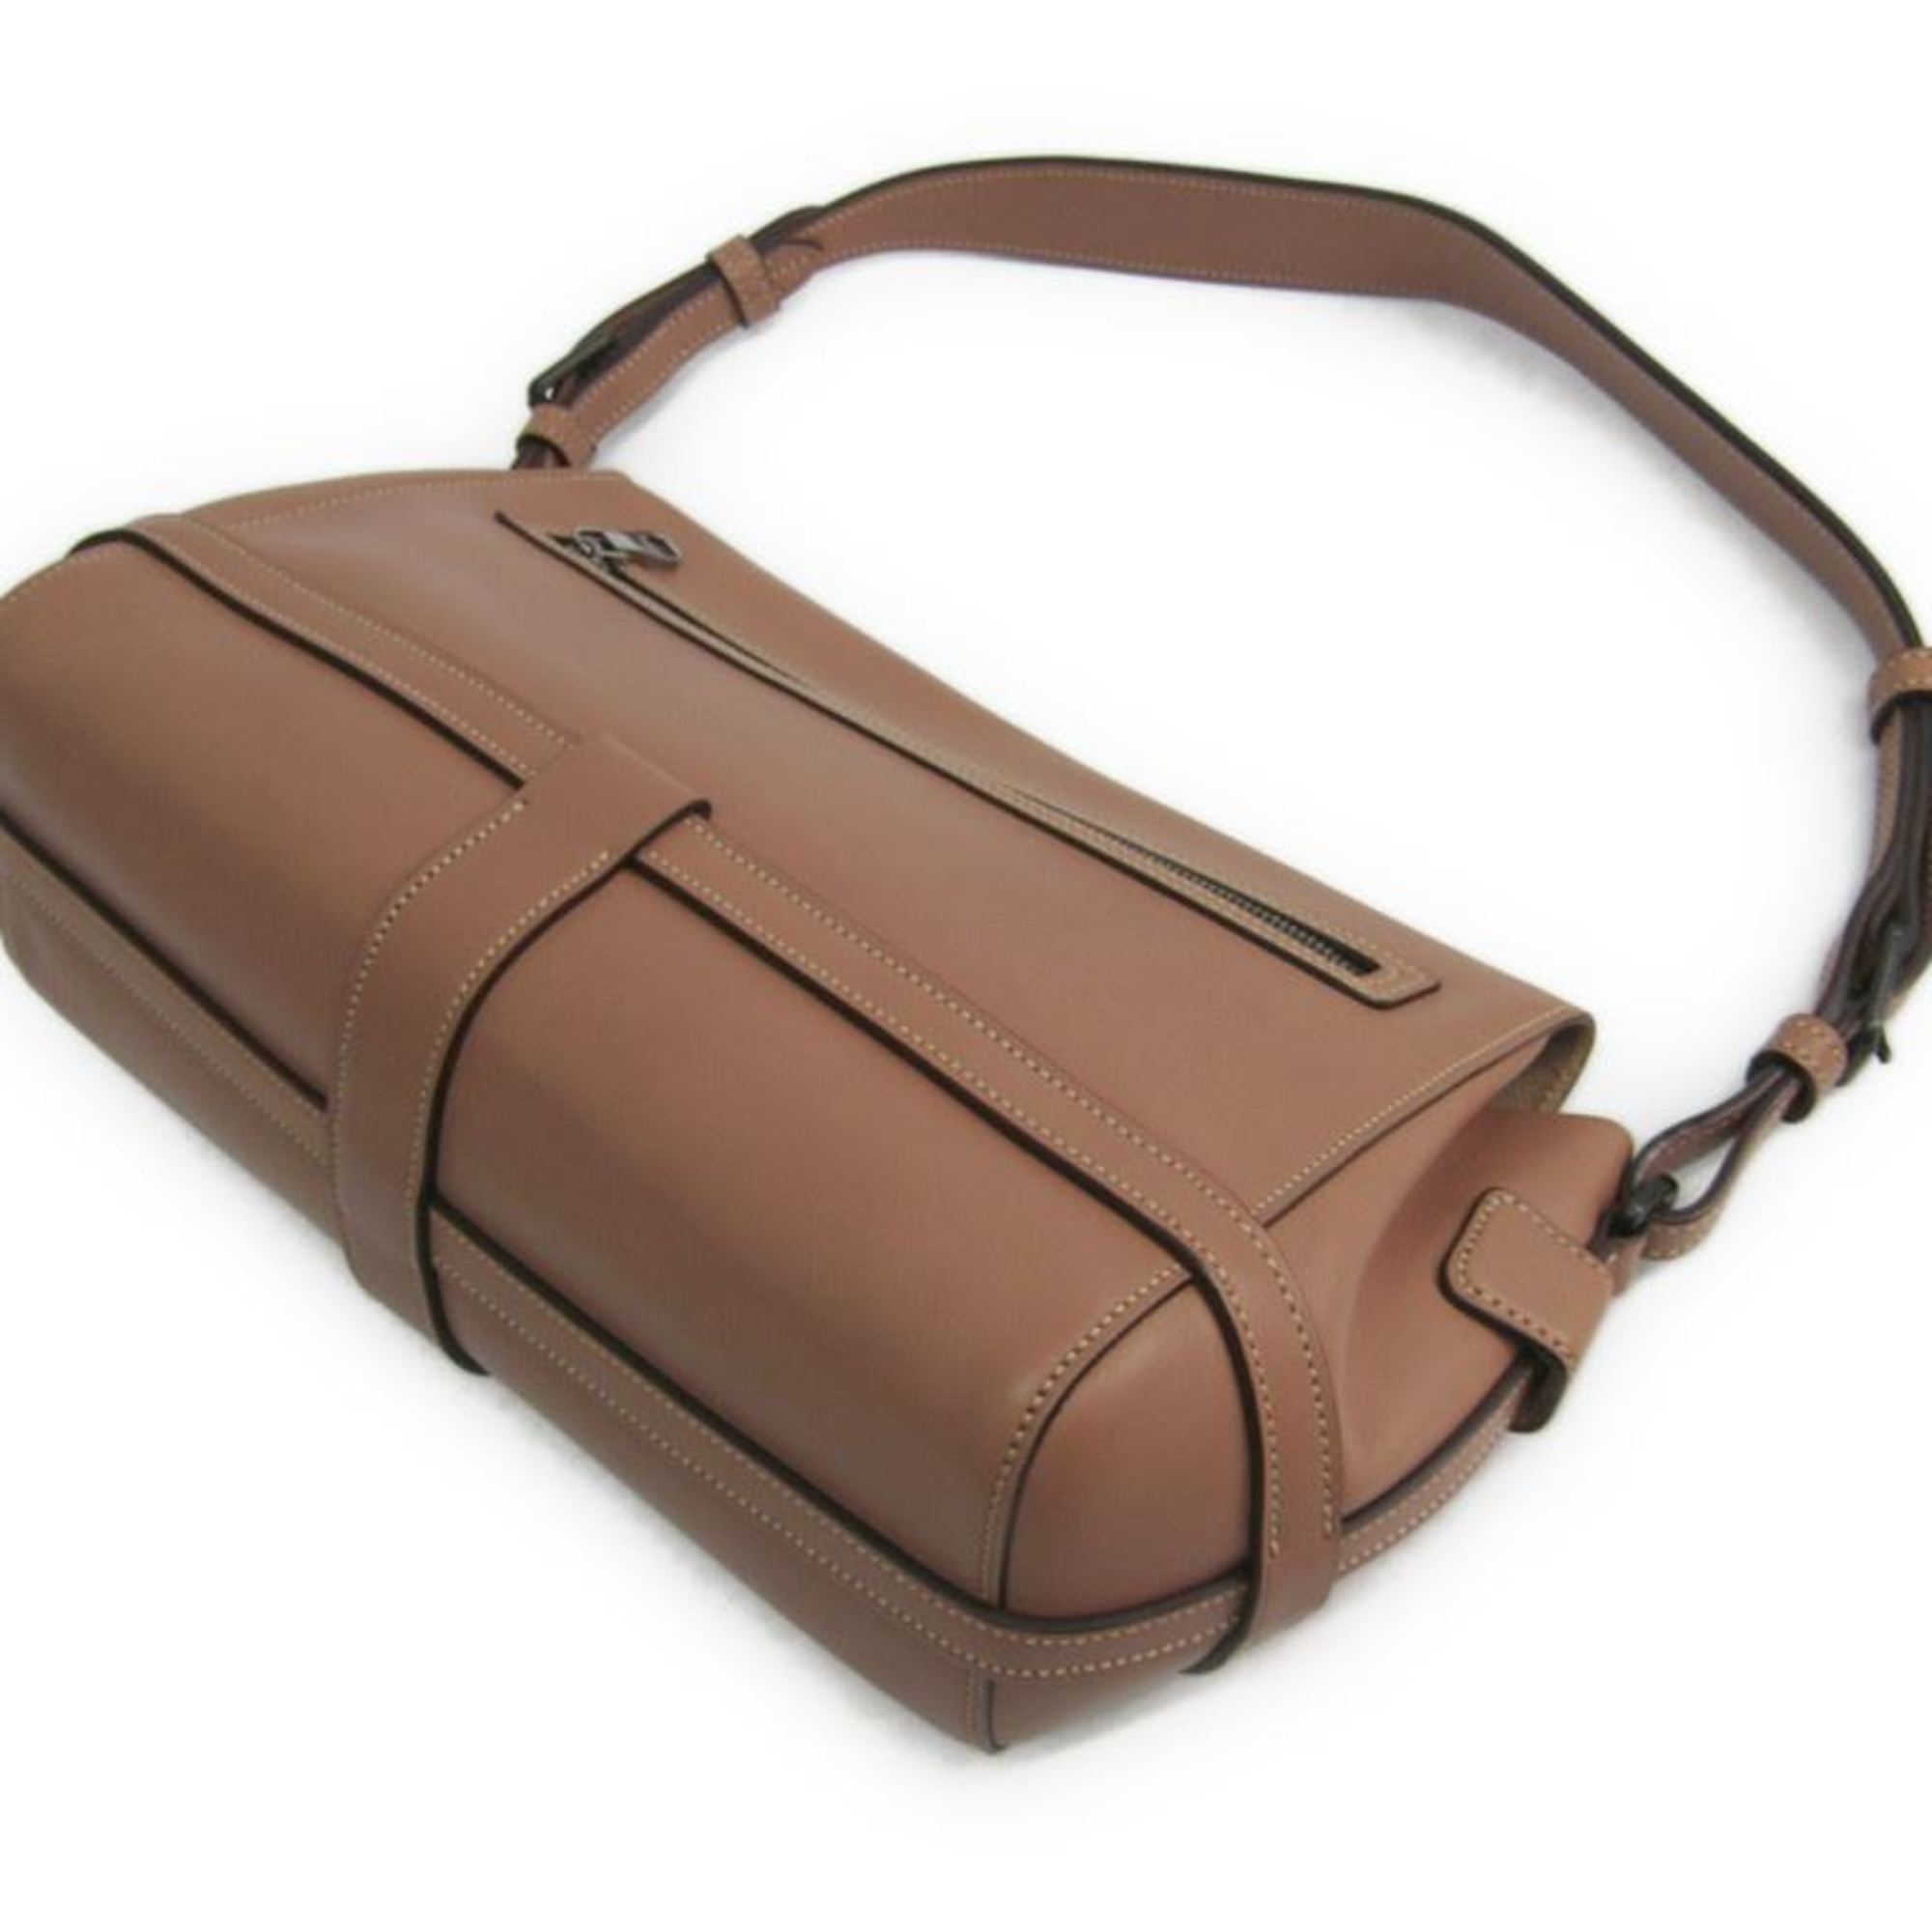 Loewe Women's Leather Shoulder Bag Brown